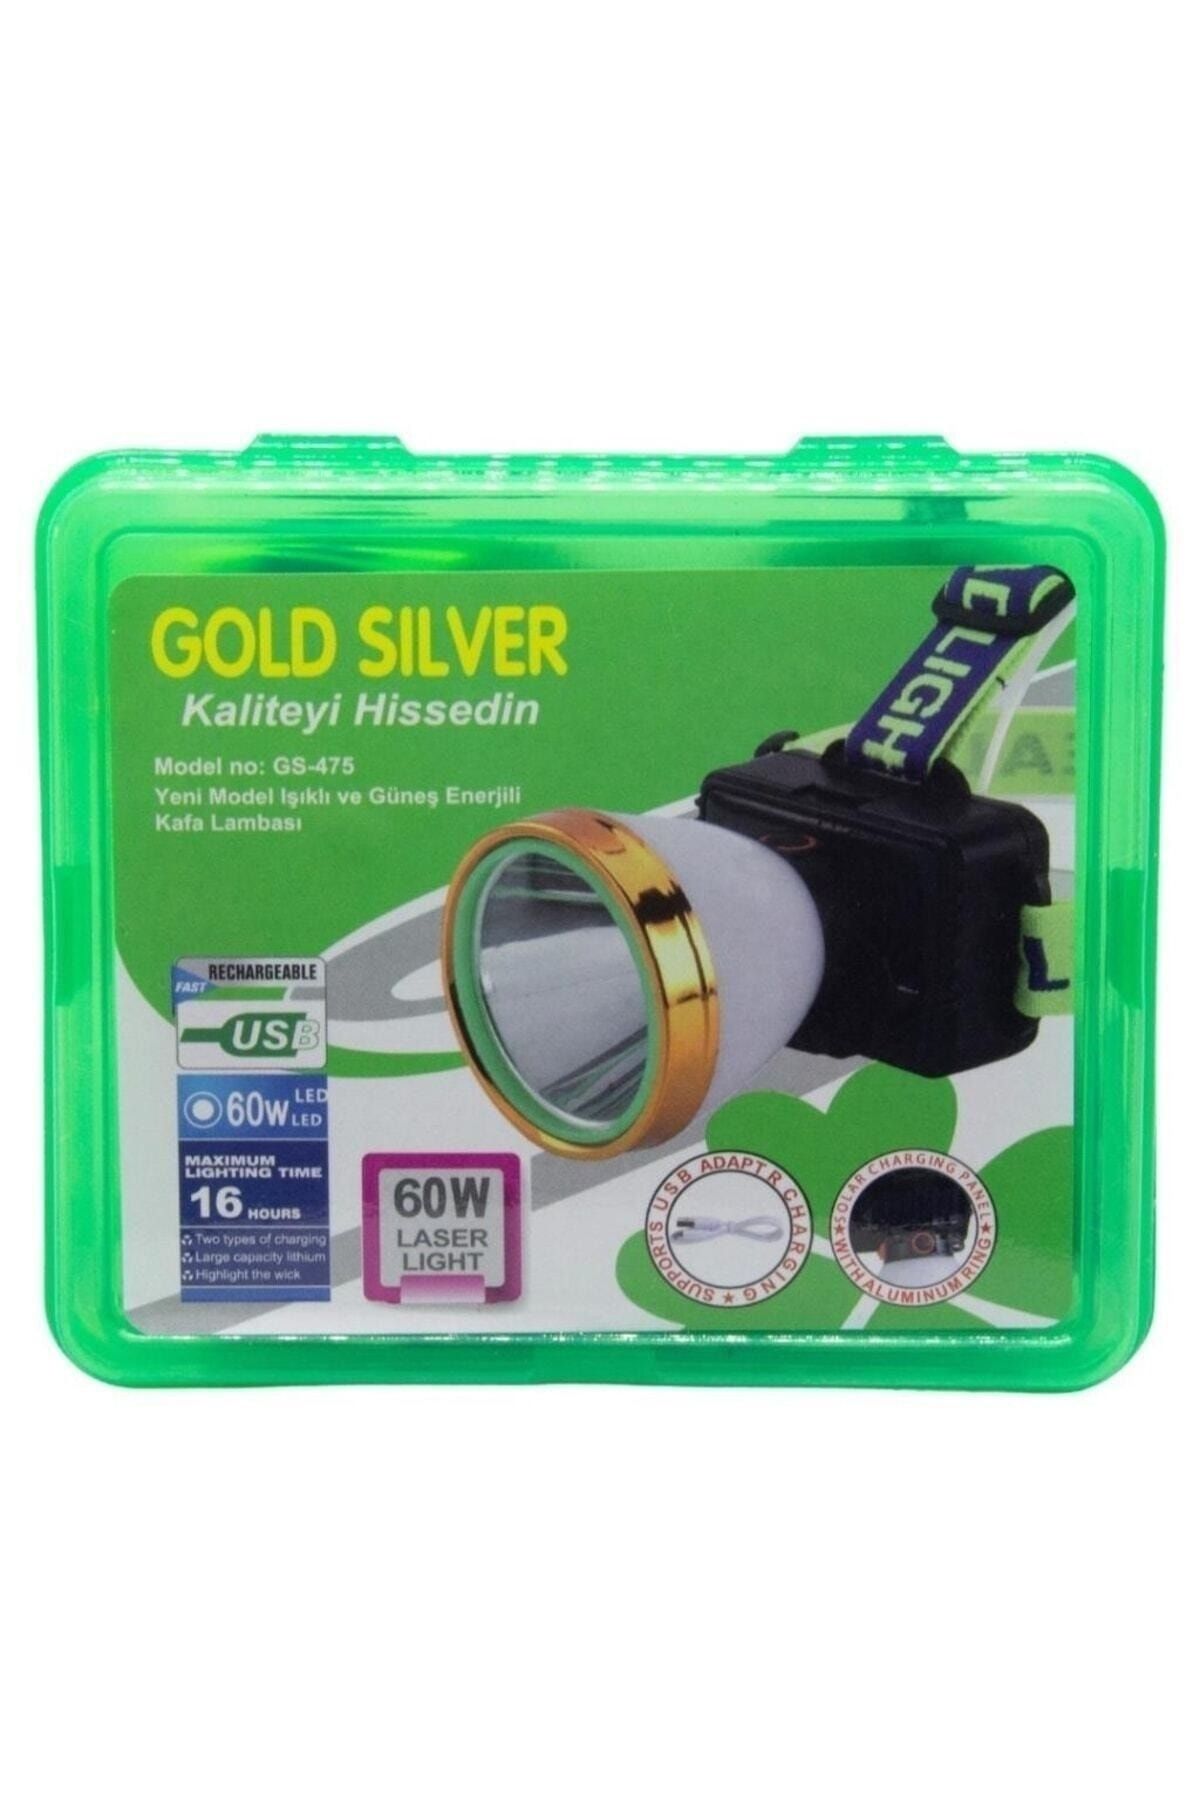 GoldSilver Gold Silver Gs-475 60w Güneş Enerjili Kafa Lambası